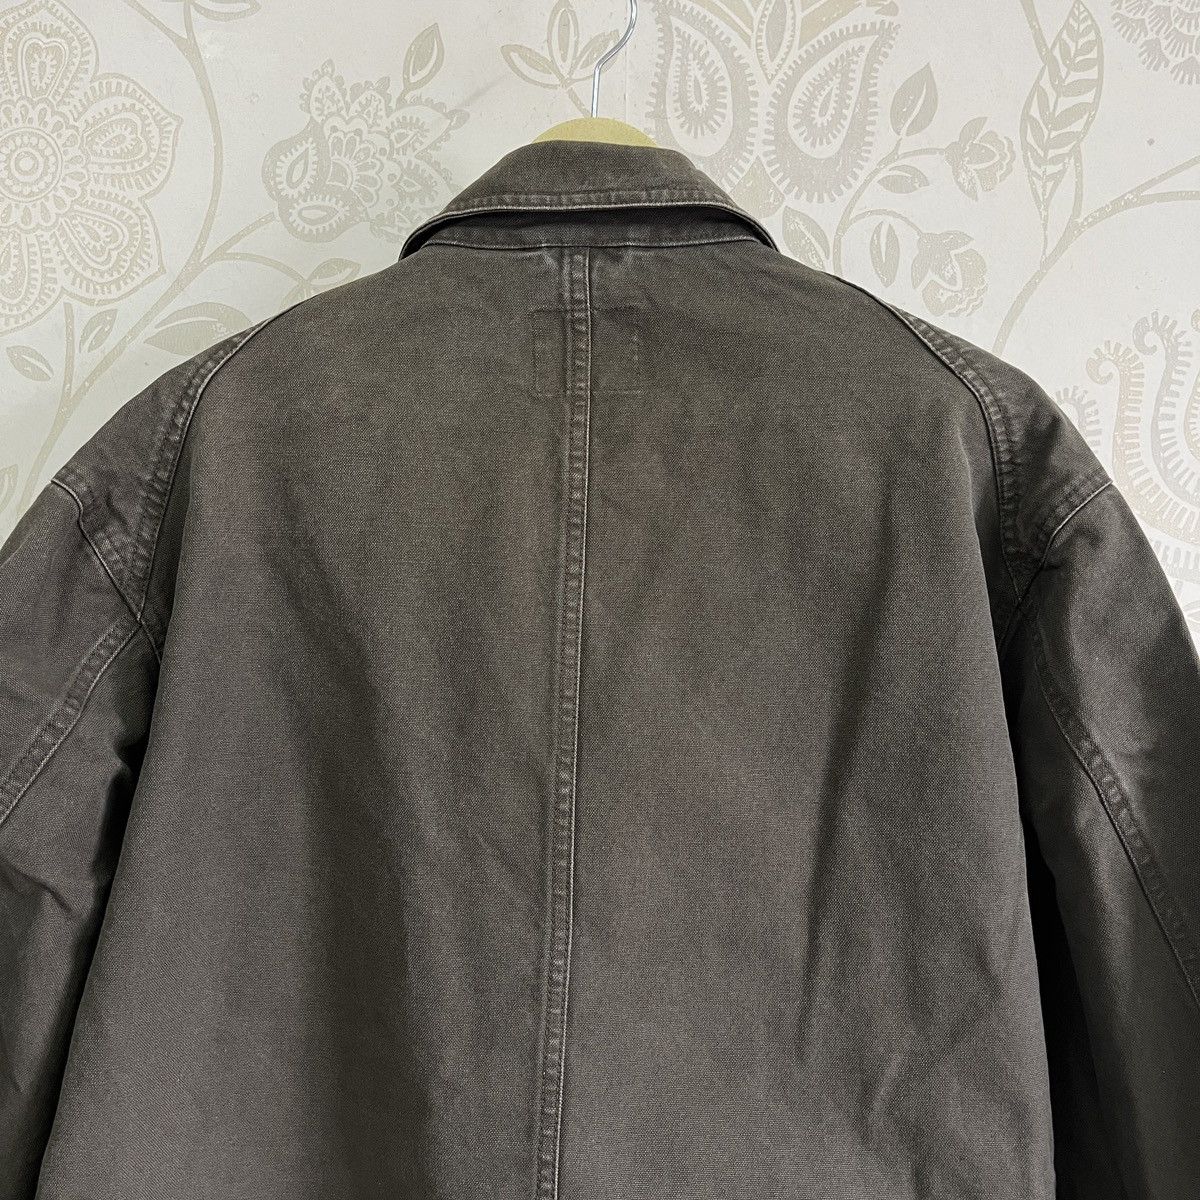 Uniqlo Chore Jacket Japan Size XL - 20